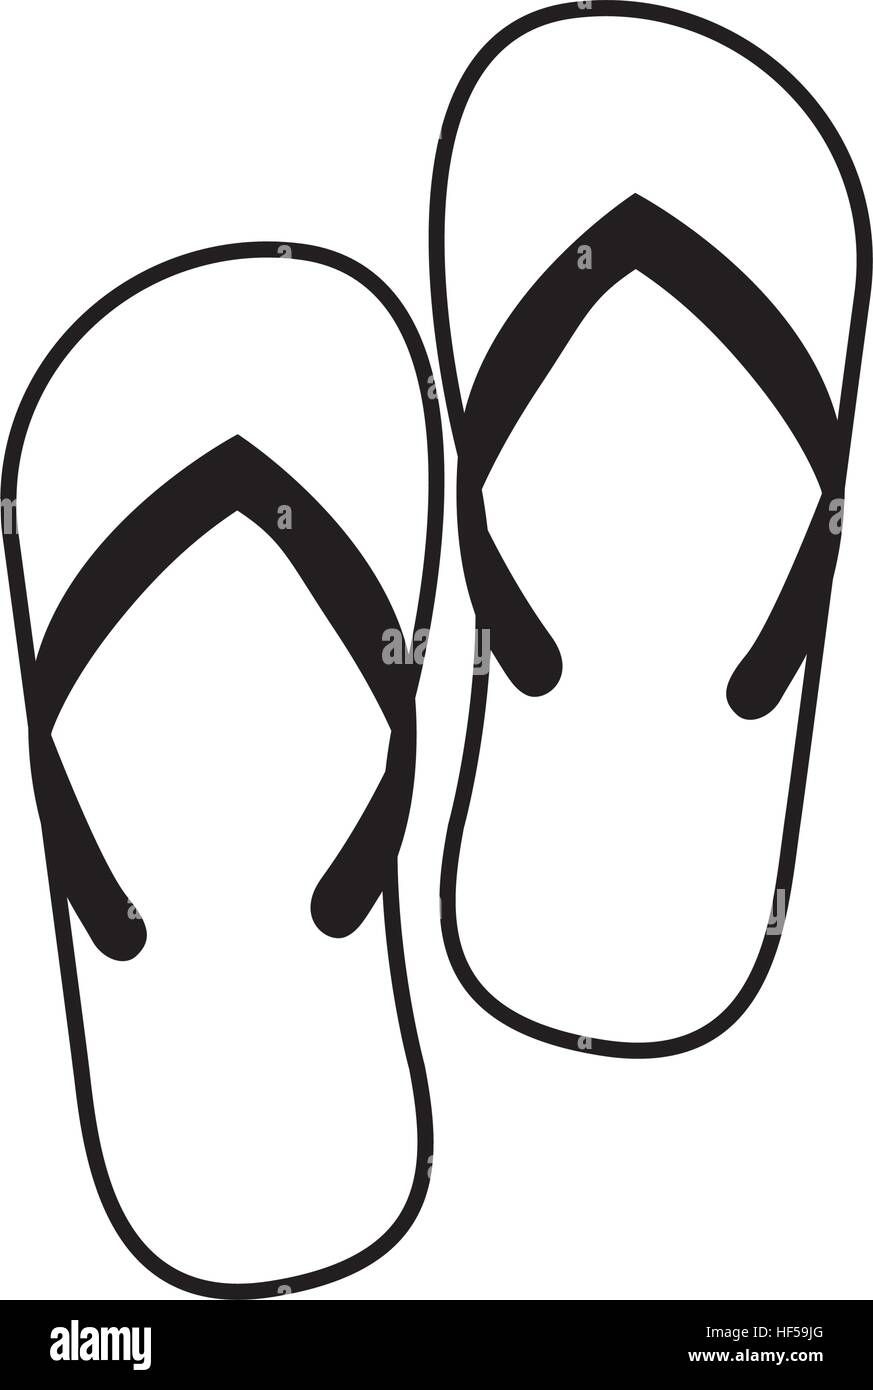 L'icône de sandales. Chaussures de mode chaussures de plage et beuty thème.  Conception isolés. Vector illustration Image Vectorielle Stock - Alamy